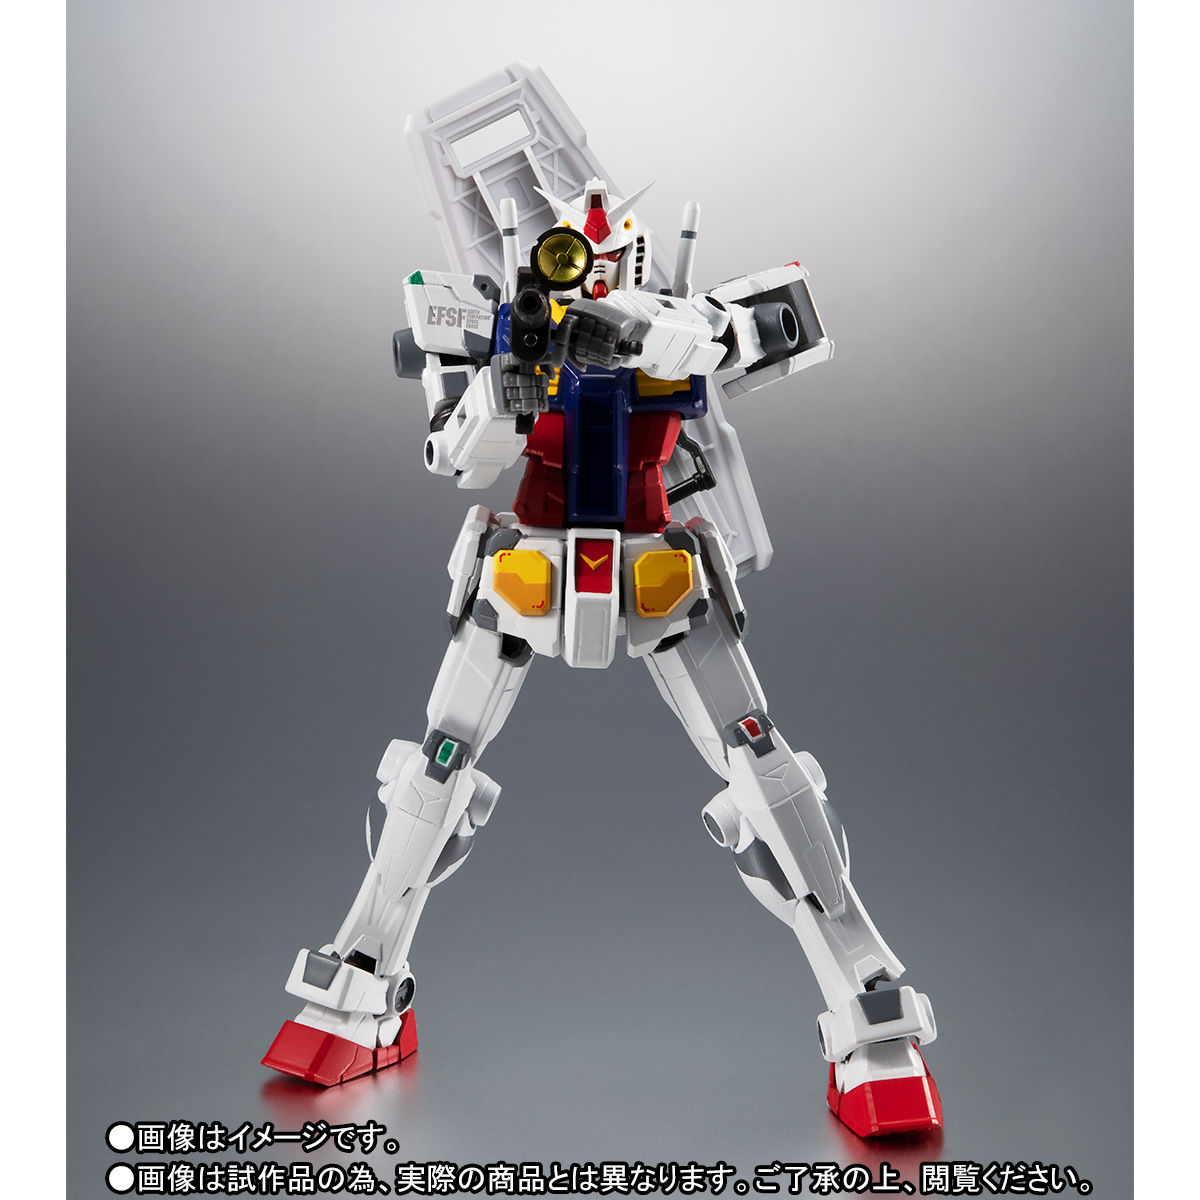 【限定販売】ROBOT魂〈SIDE MS〉『RX-78F00 ガンダム』可動フィギュア-006